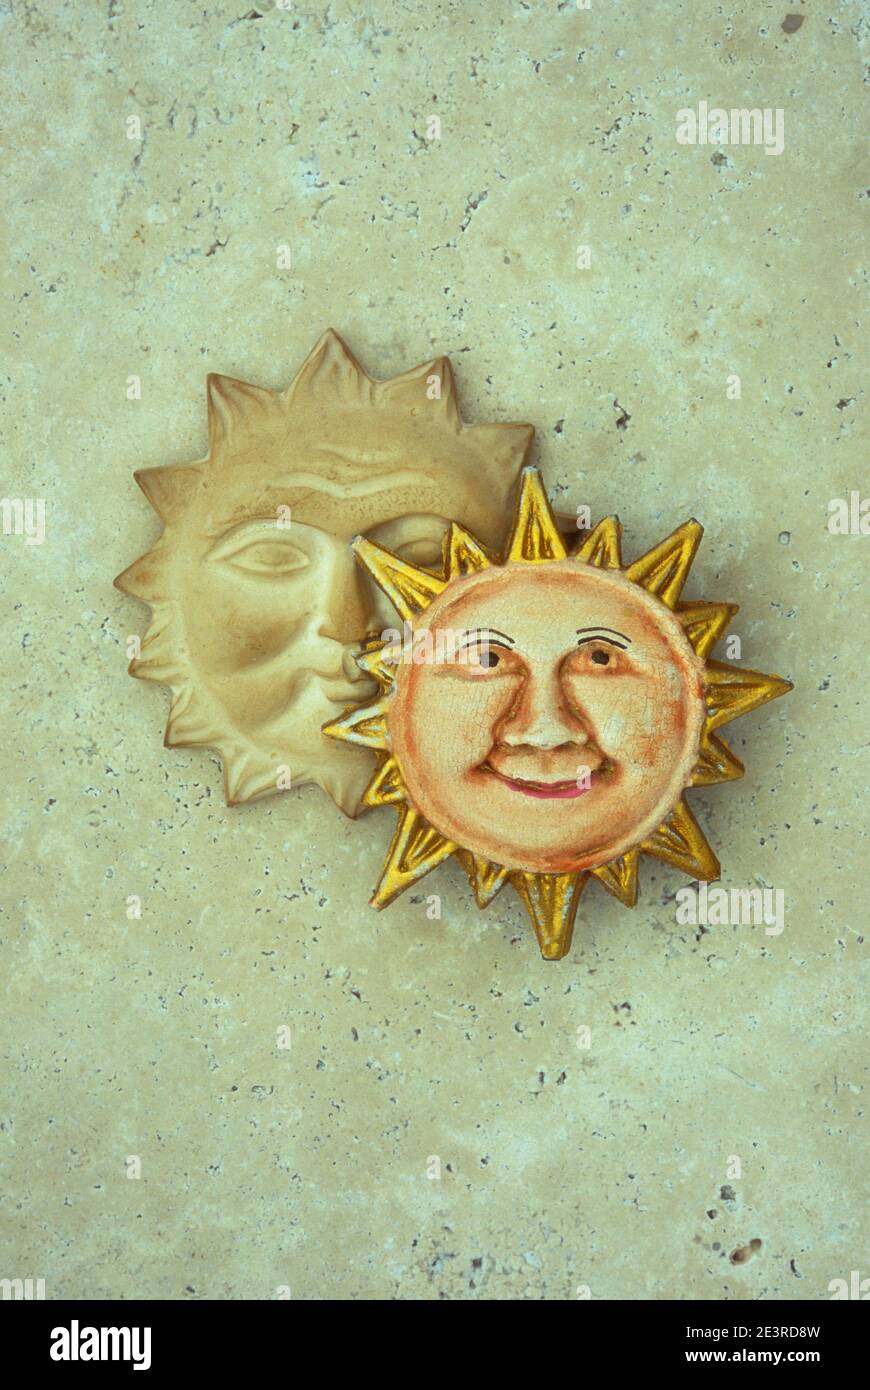 Modello in gesso di sole sorridente con faccia amichevole e molto altro il sole serio e oscuro dietro di esso Foto Stock